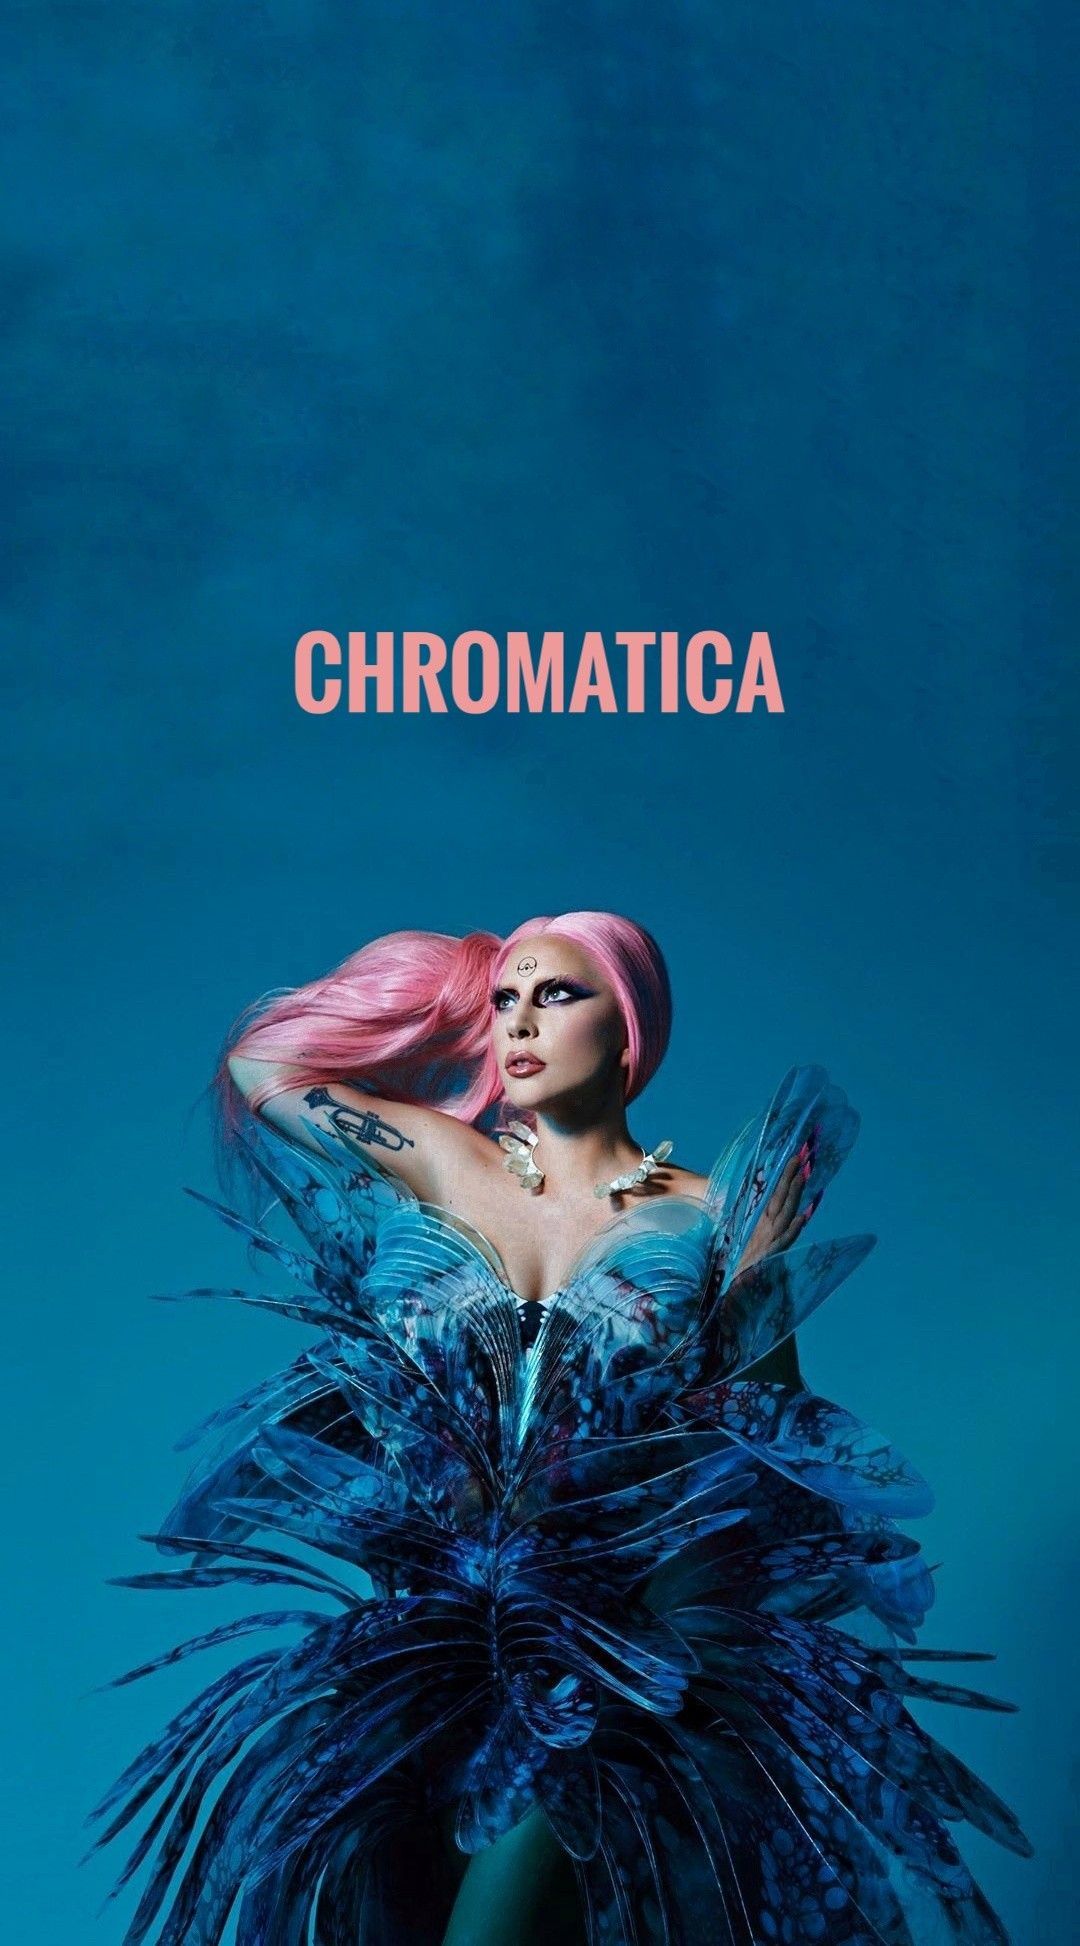  Lady Gaga Hintergrundbild 1080x1946. Chromatica wallpaper. Lady gaga picture, Lady gaga, Gaga